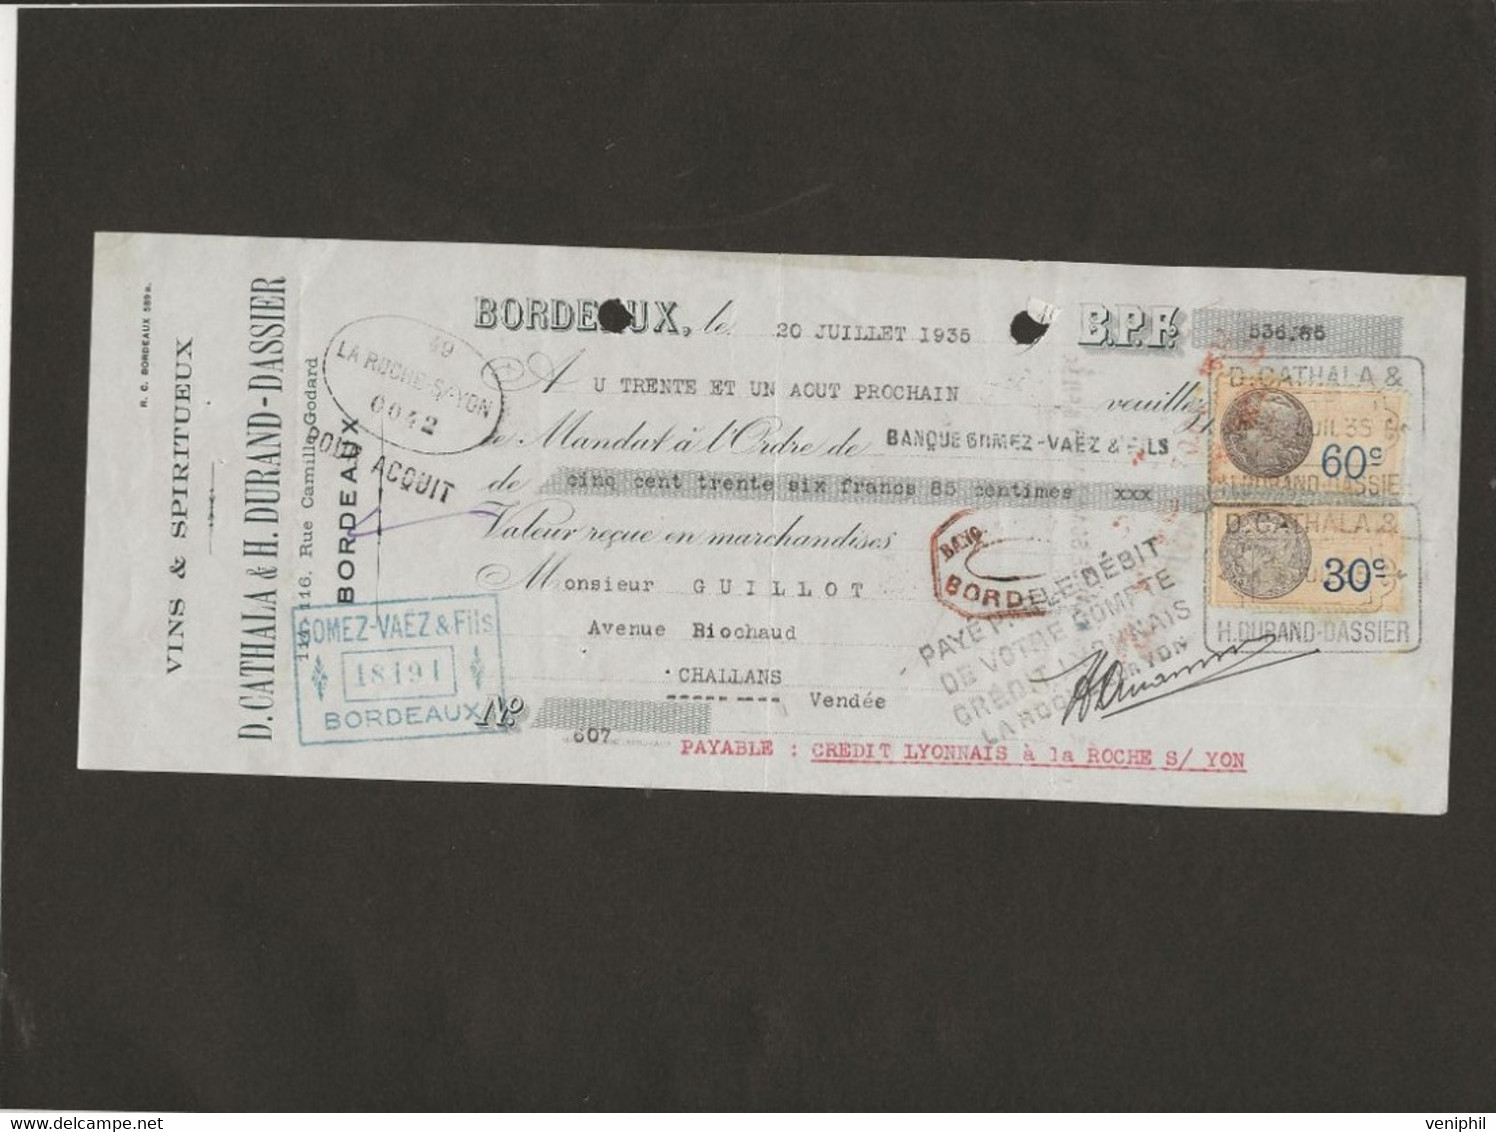 LETTRE DE CHANGE - VINS ET SPIRITUEUX - CATHALA -DURAND -DASSIER -BORDEAUX -ANNEE 1935 - Bills Of Exchange